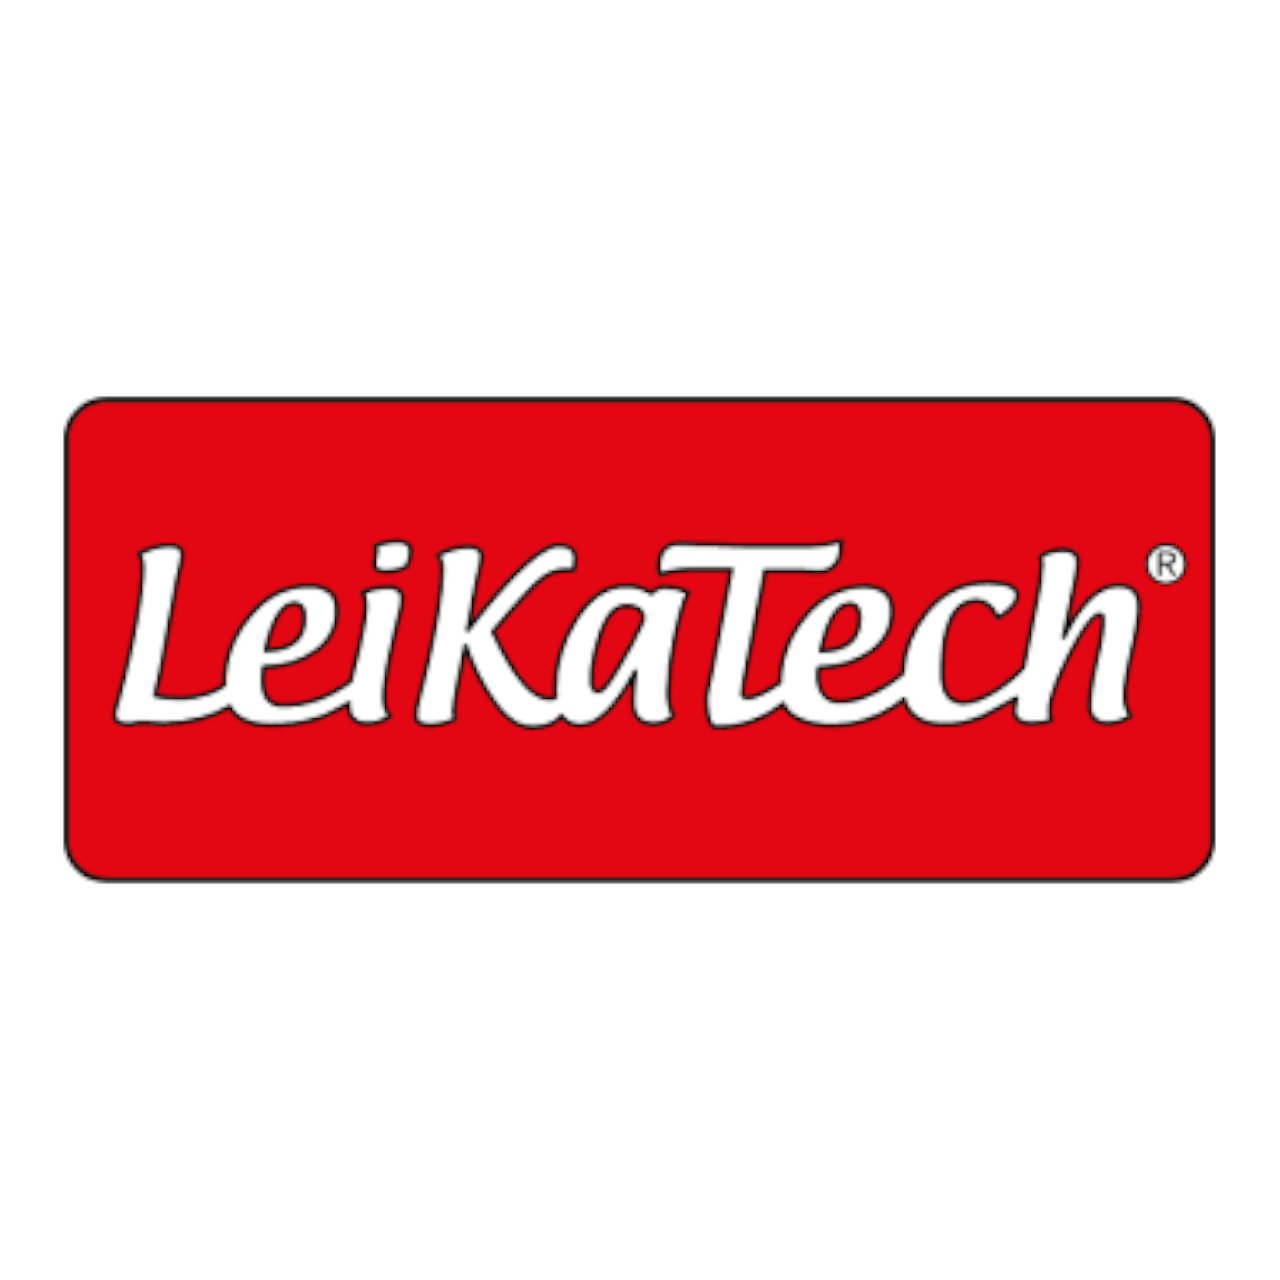 LeikaTech